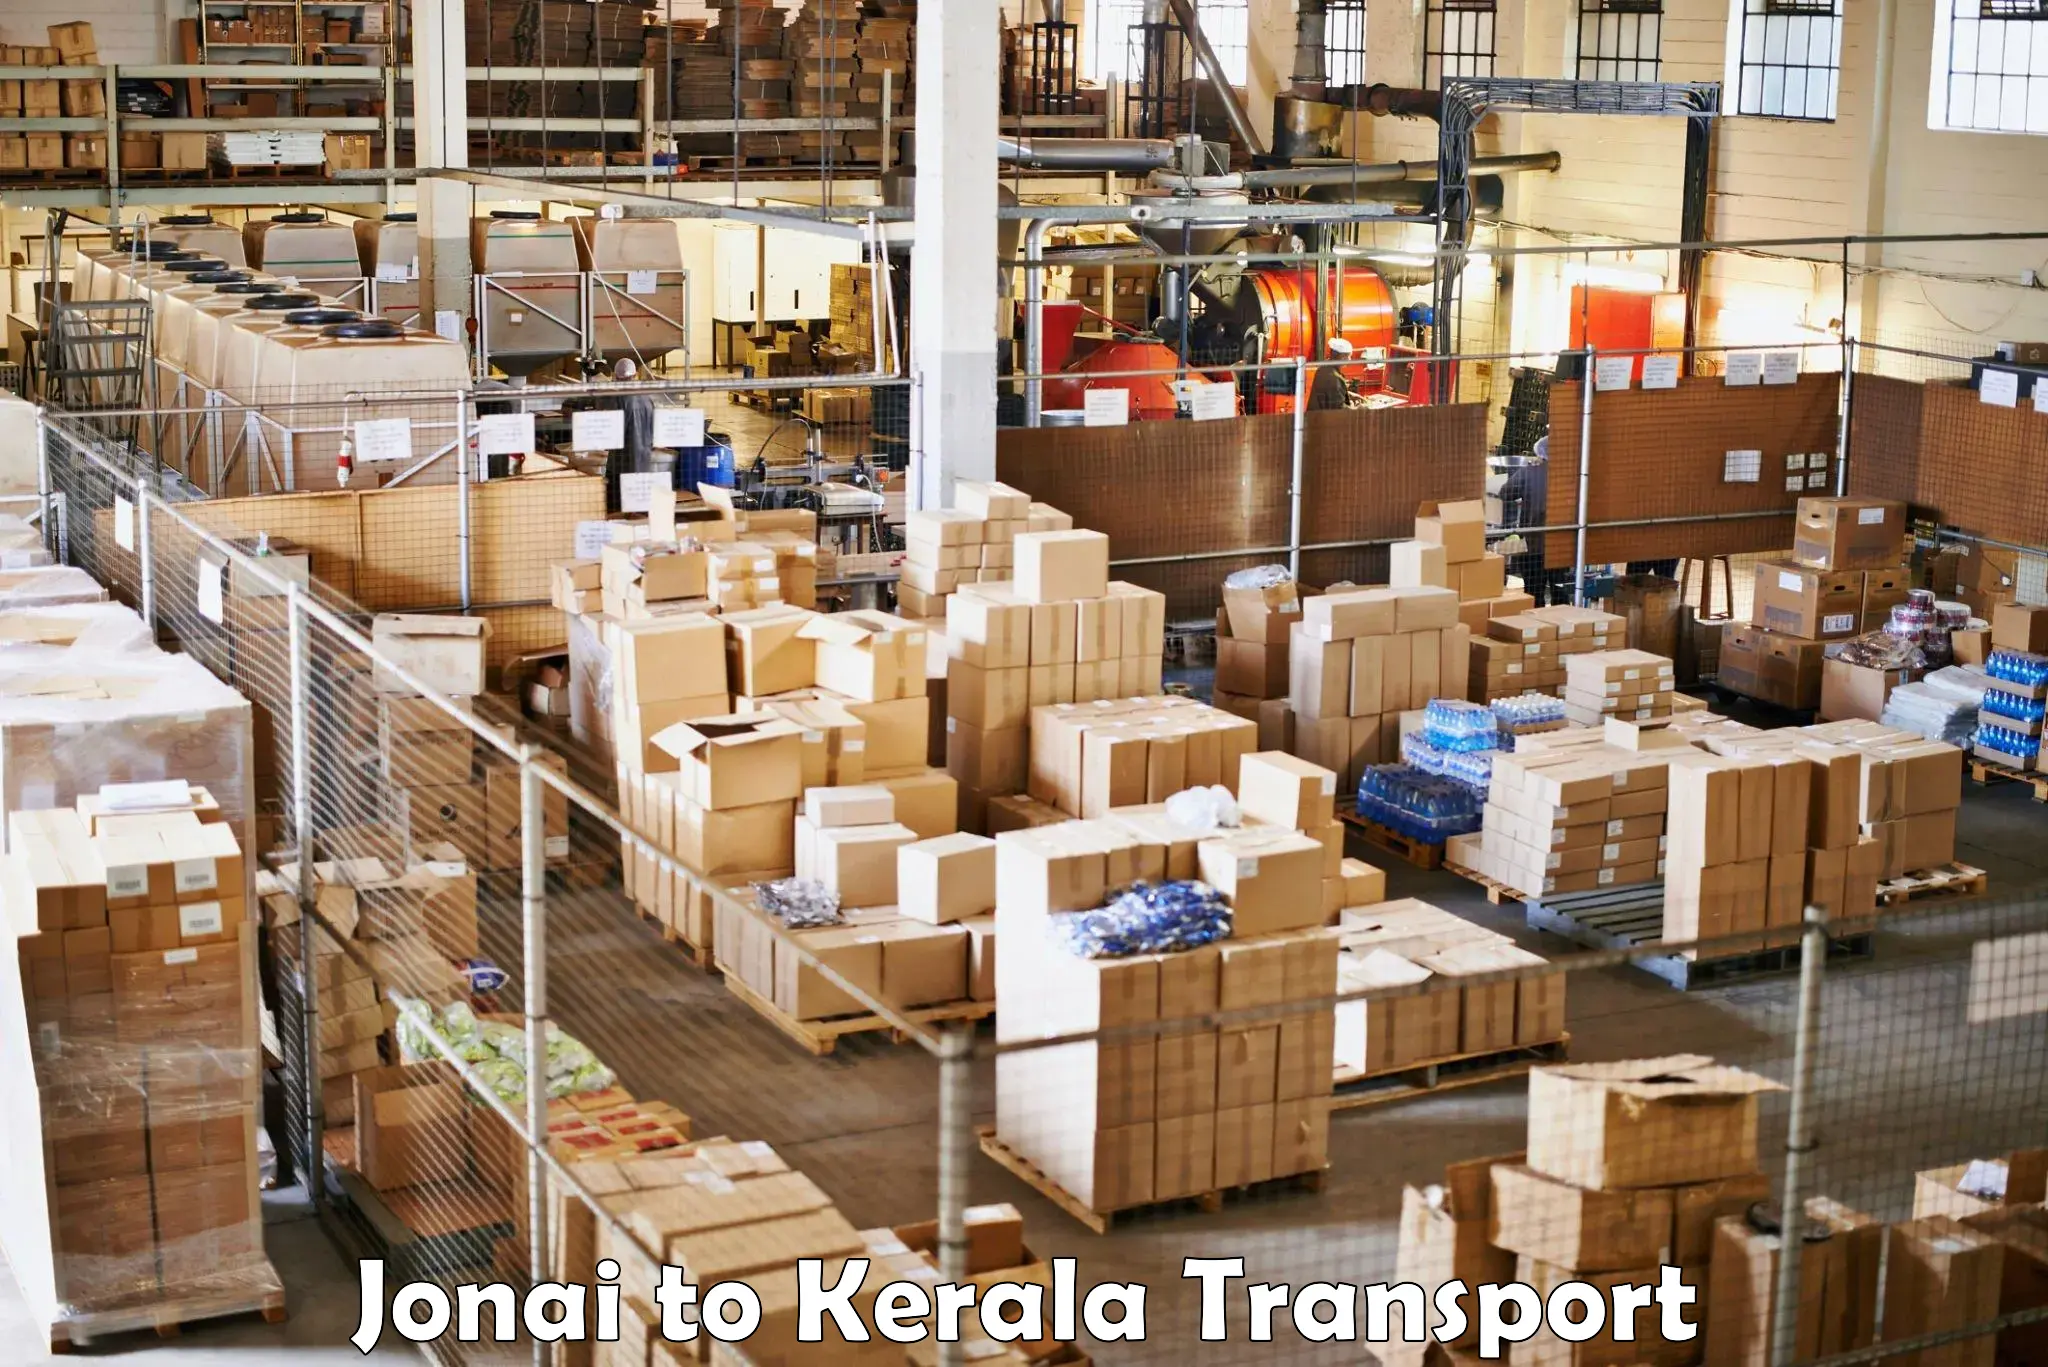 Nationwide transport services Jonai to Kottayam